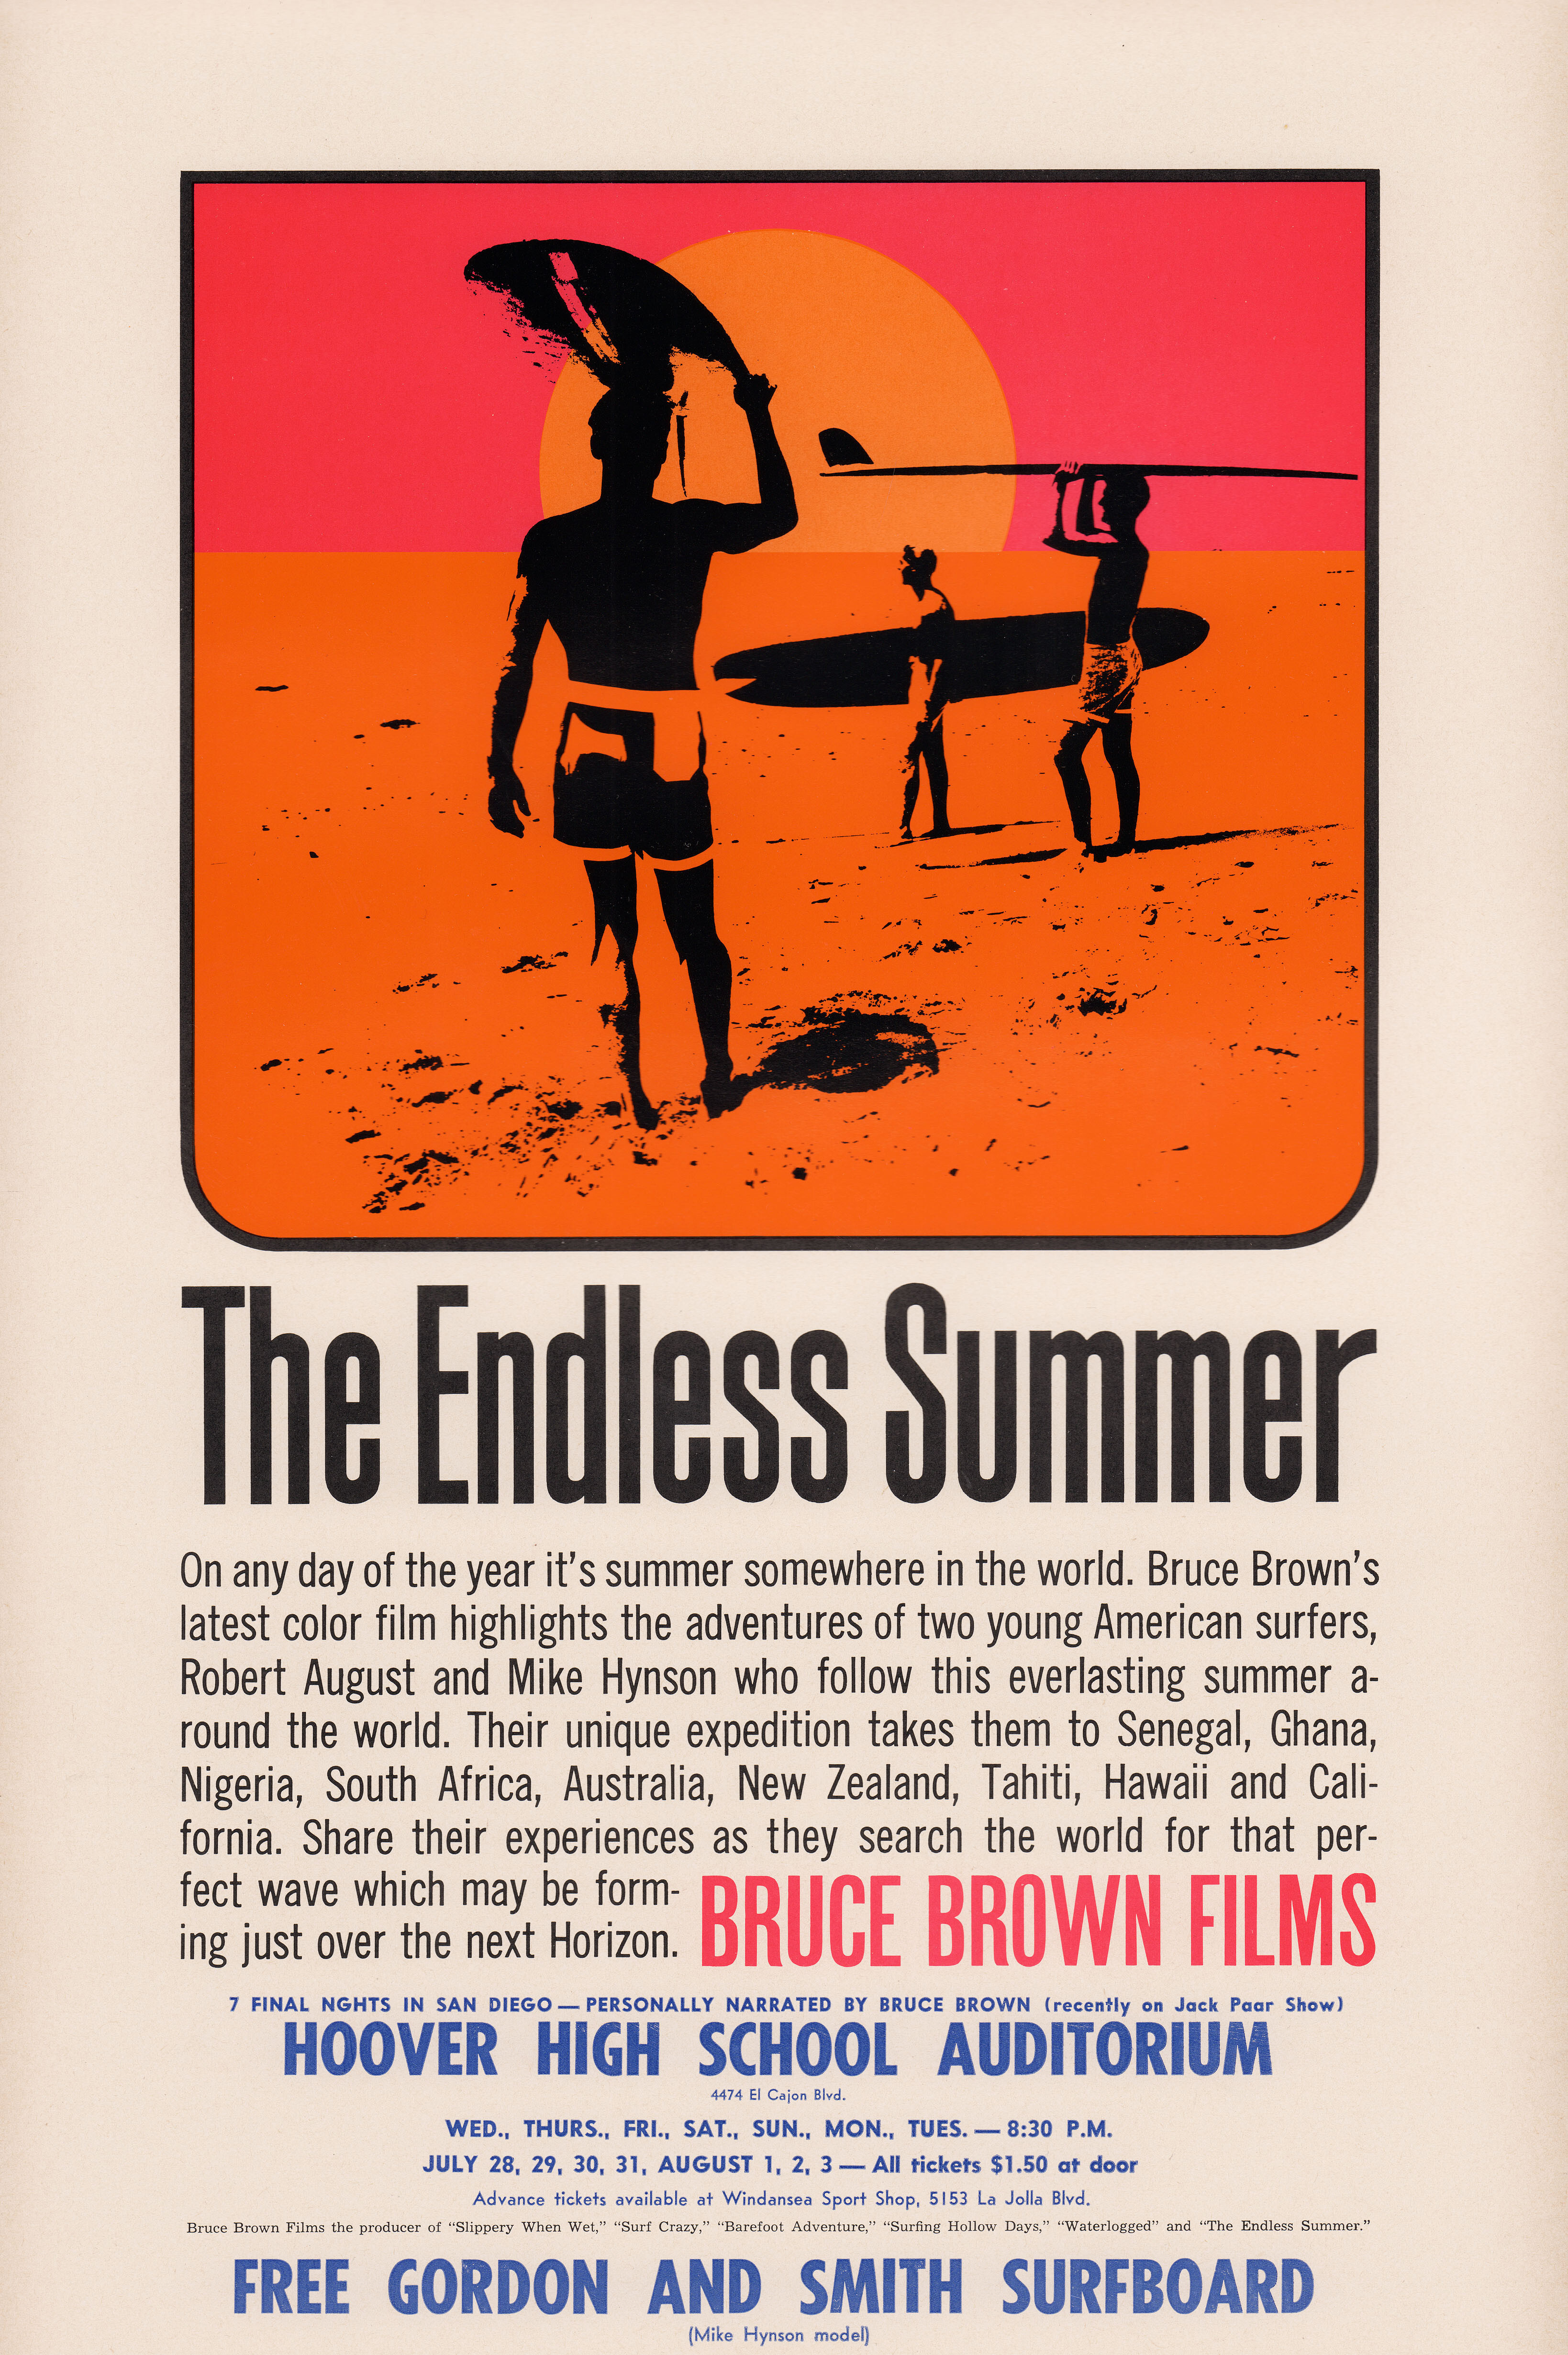 Бесконечное лето (The Endless Summer, 1966), режиссёр Брюс Браун, американский постер к фильму, художник Джон Ван Хамерсвелд (психоделическое искусство, 1966 год)